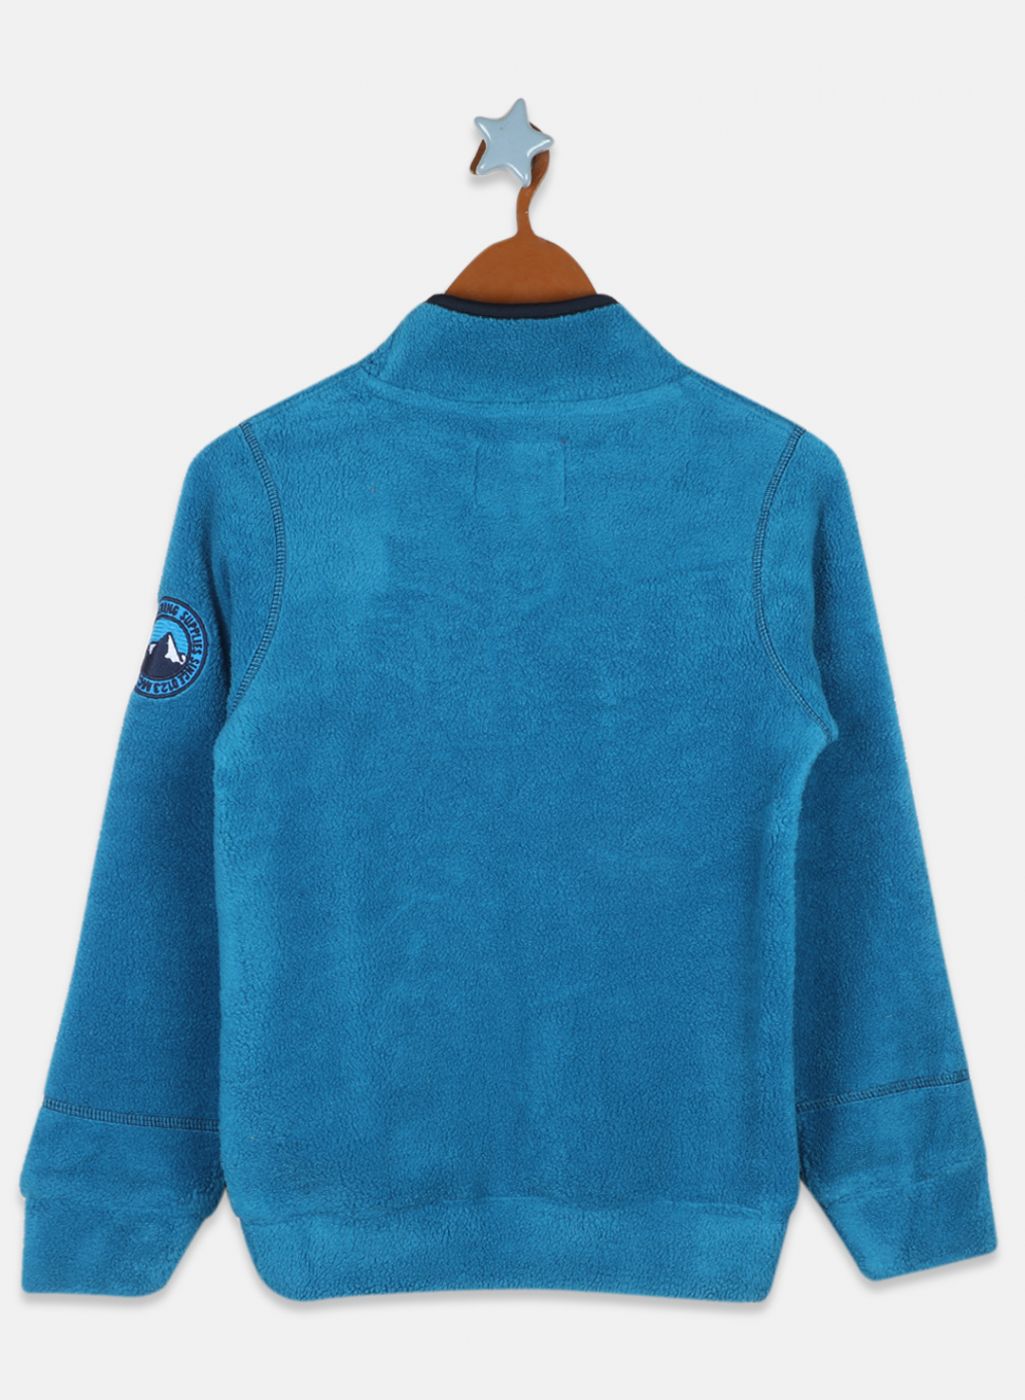 Boys Teal Blue Printed Sweatshirt